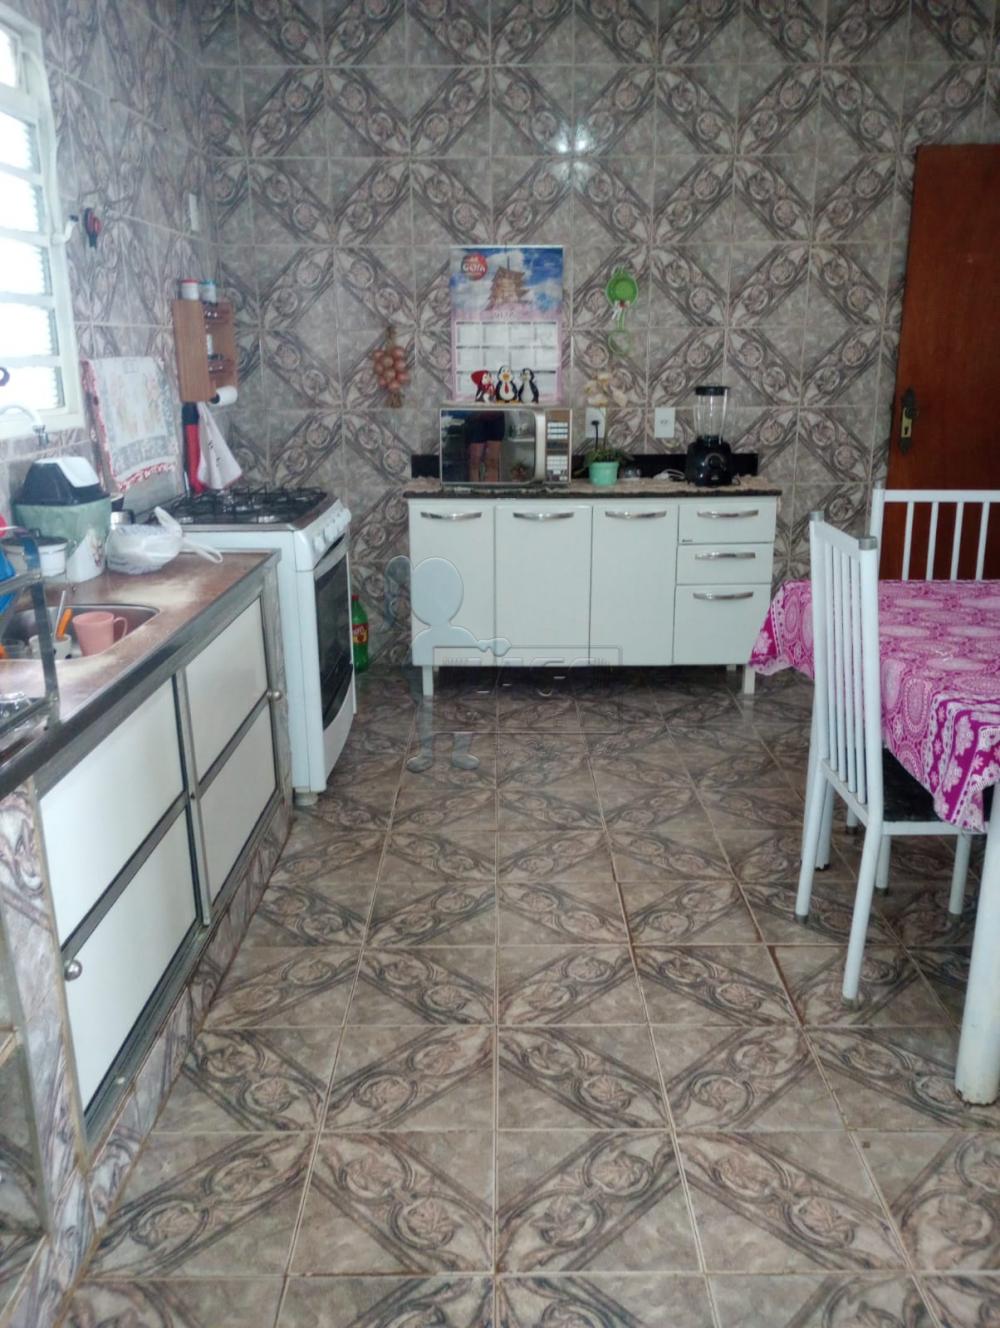 Comprar Casas / Padrão em Ribeirão Preto R$ 250.000,00 - Foto 6